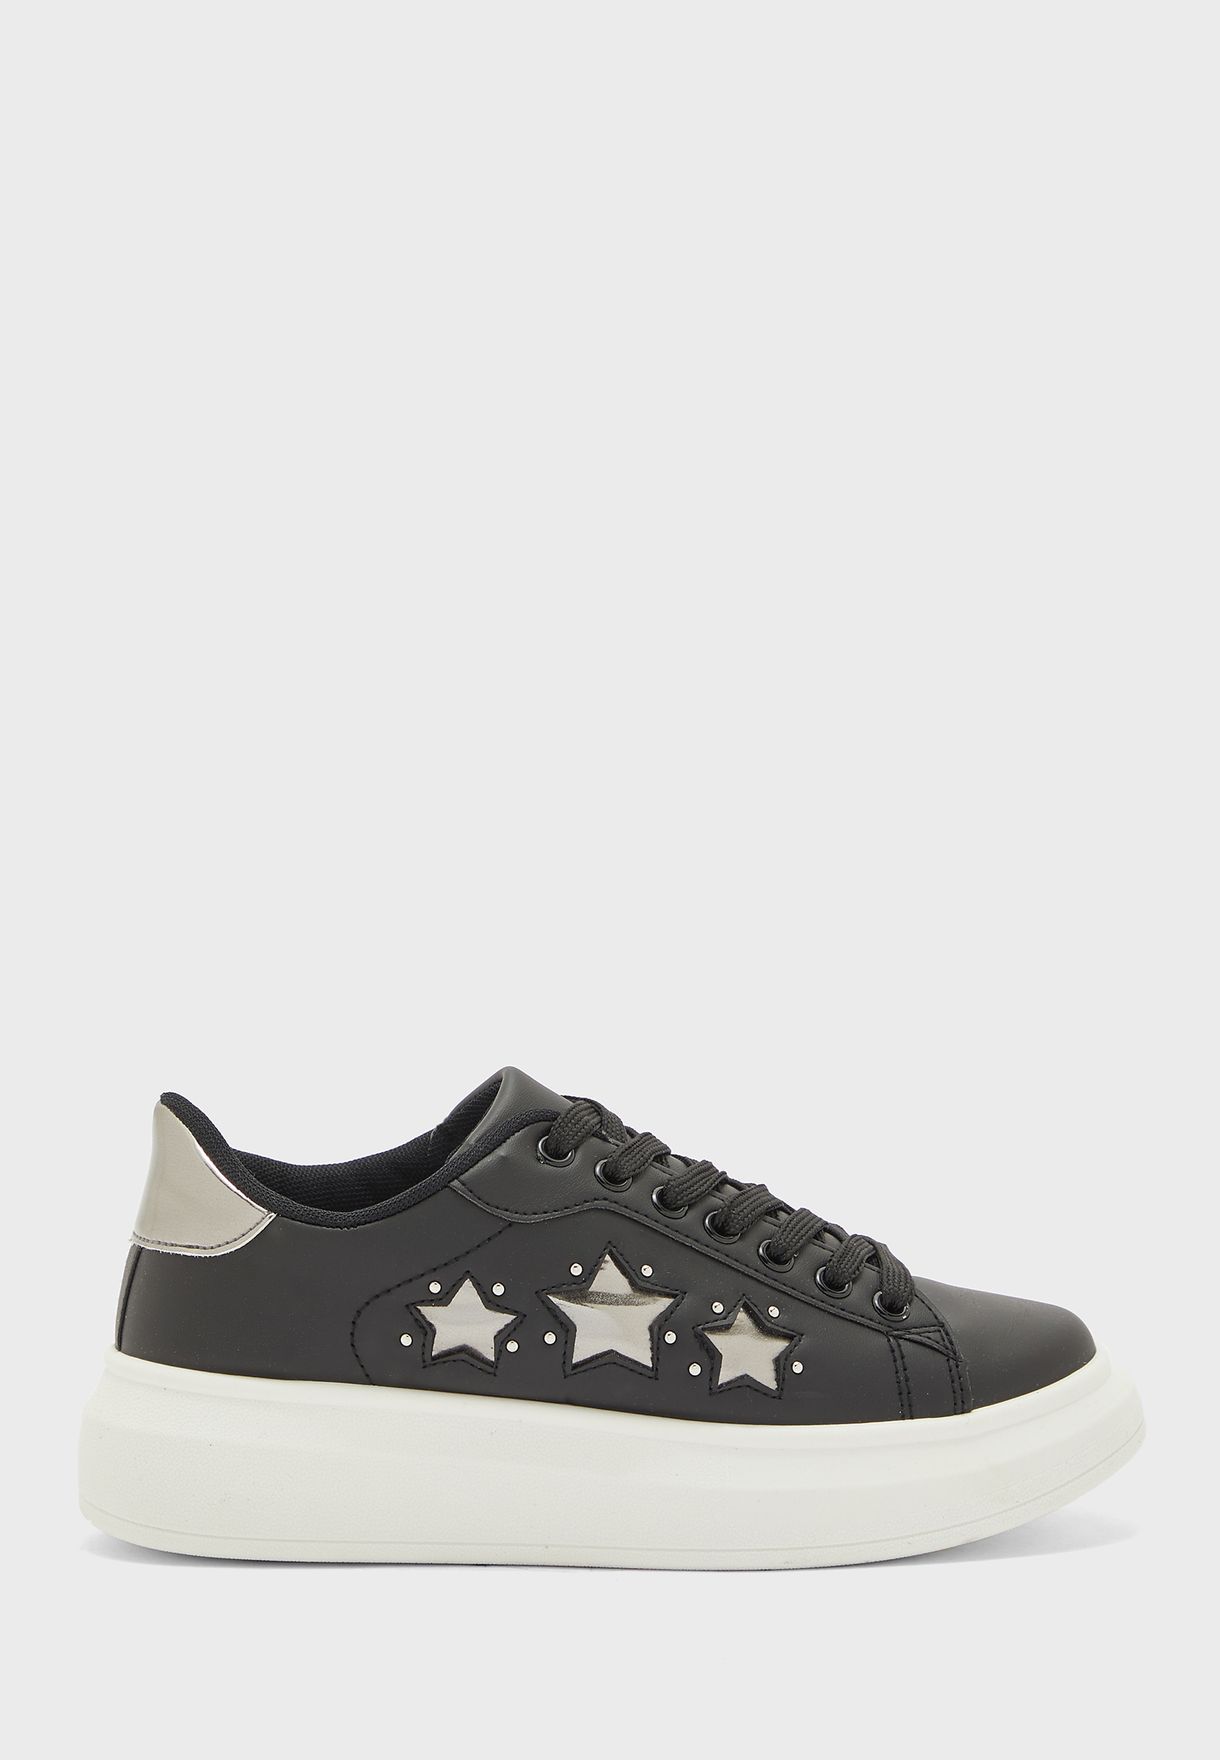 Stars Detail Low Top Sneakers